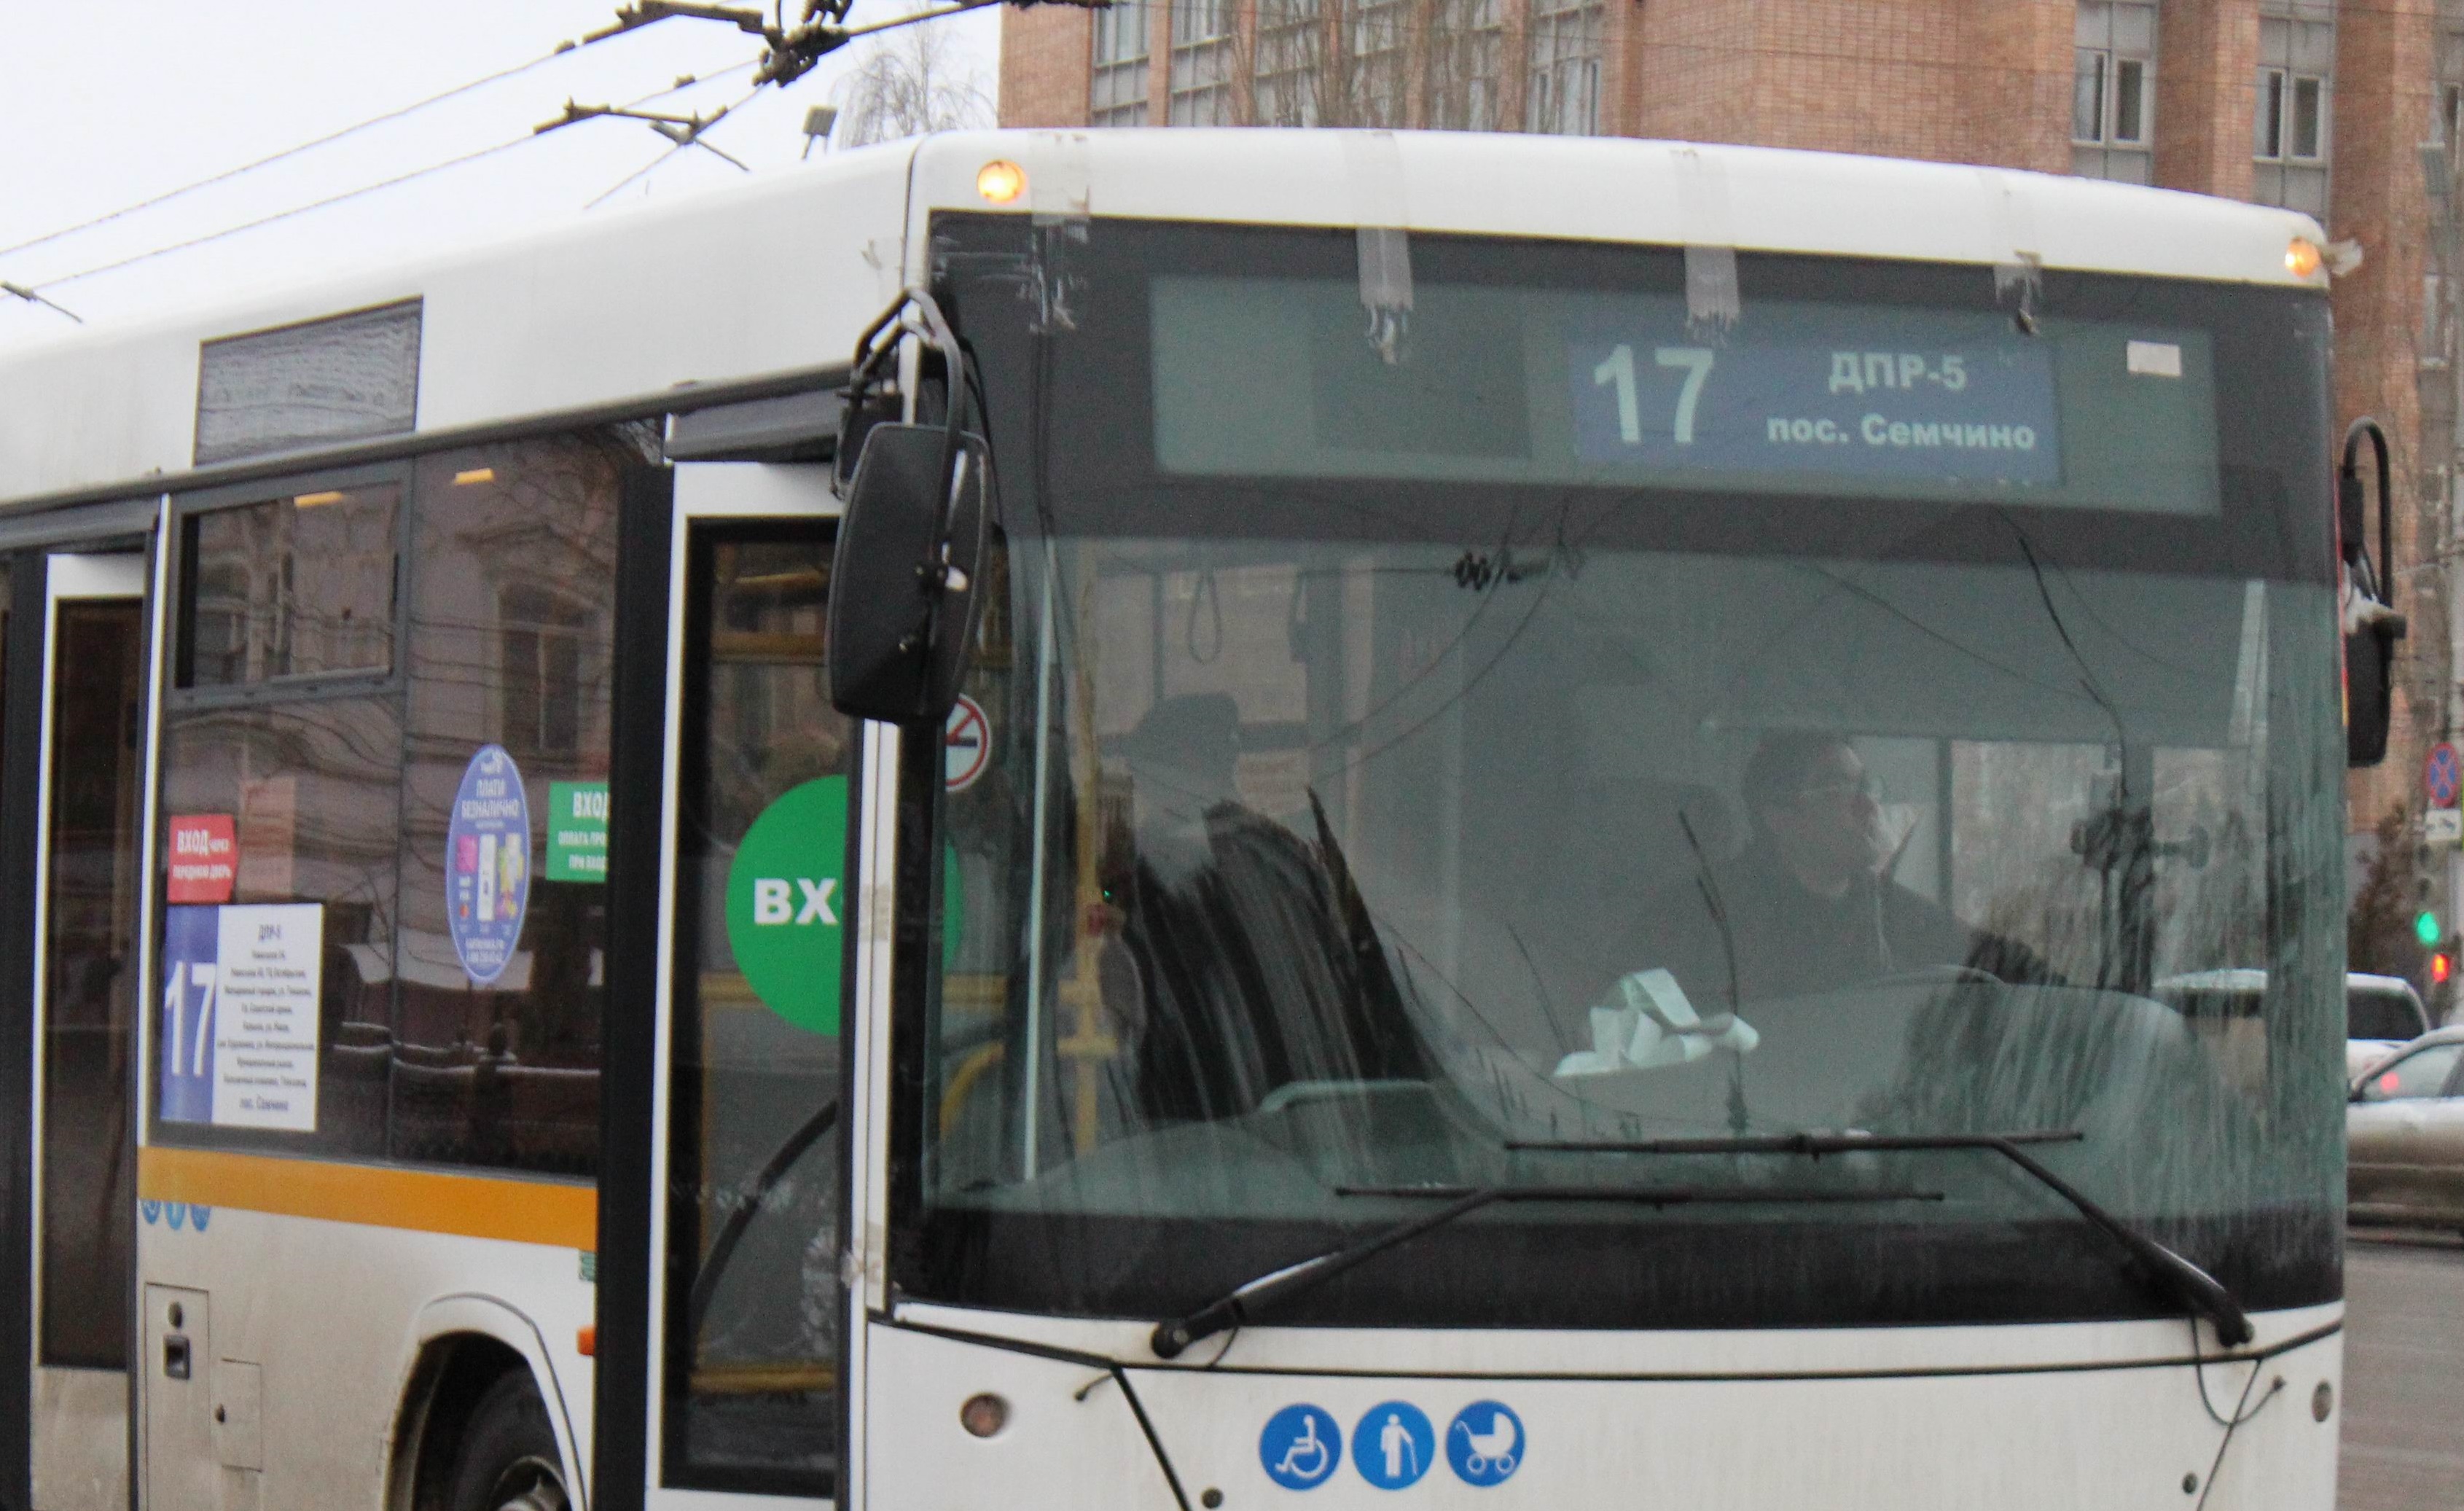 Автобус 17 на рейсе